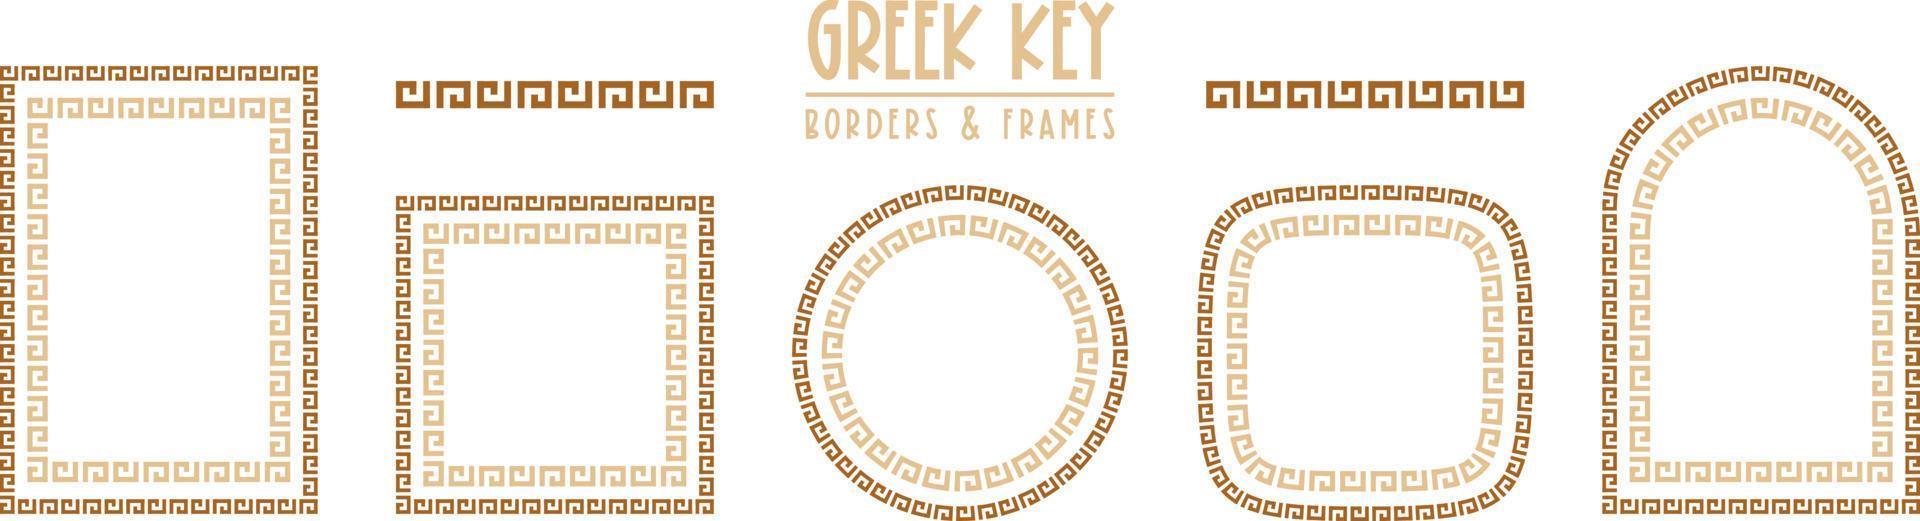 colección de marcos y bordes clave griegos. meandro antiguo decorativo vector